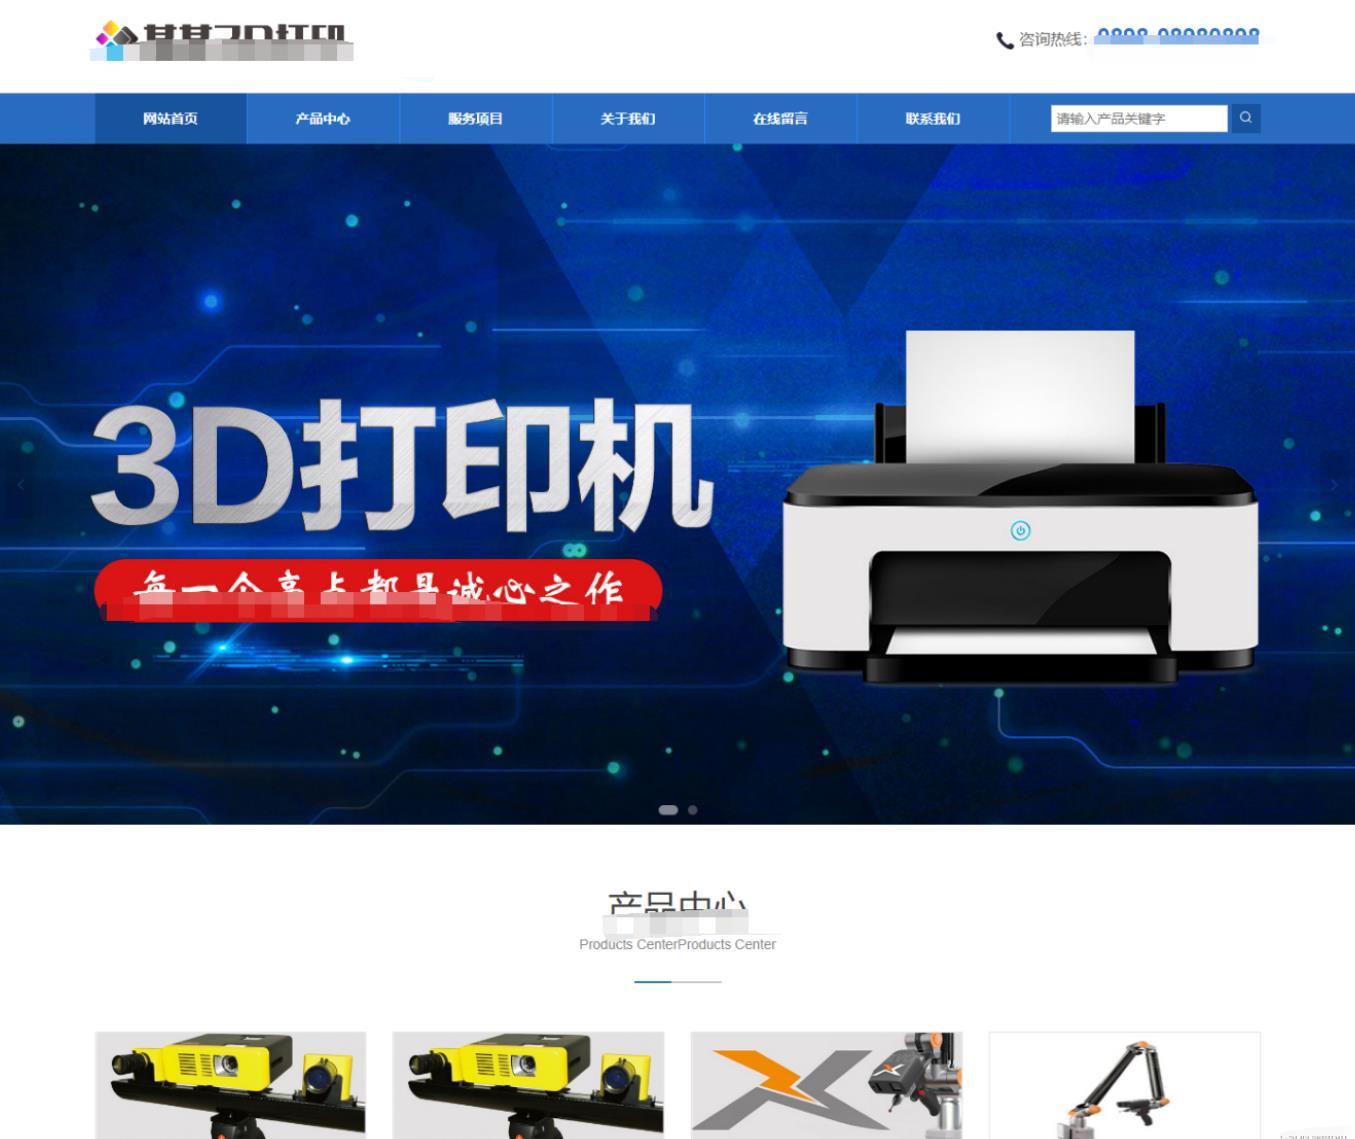 蓝色响应式3D打印设备公司网站模板源码+有后台